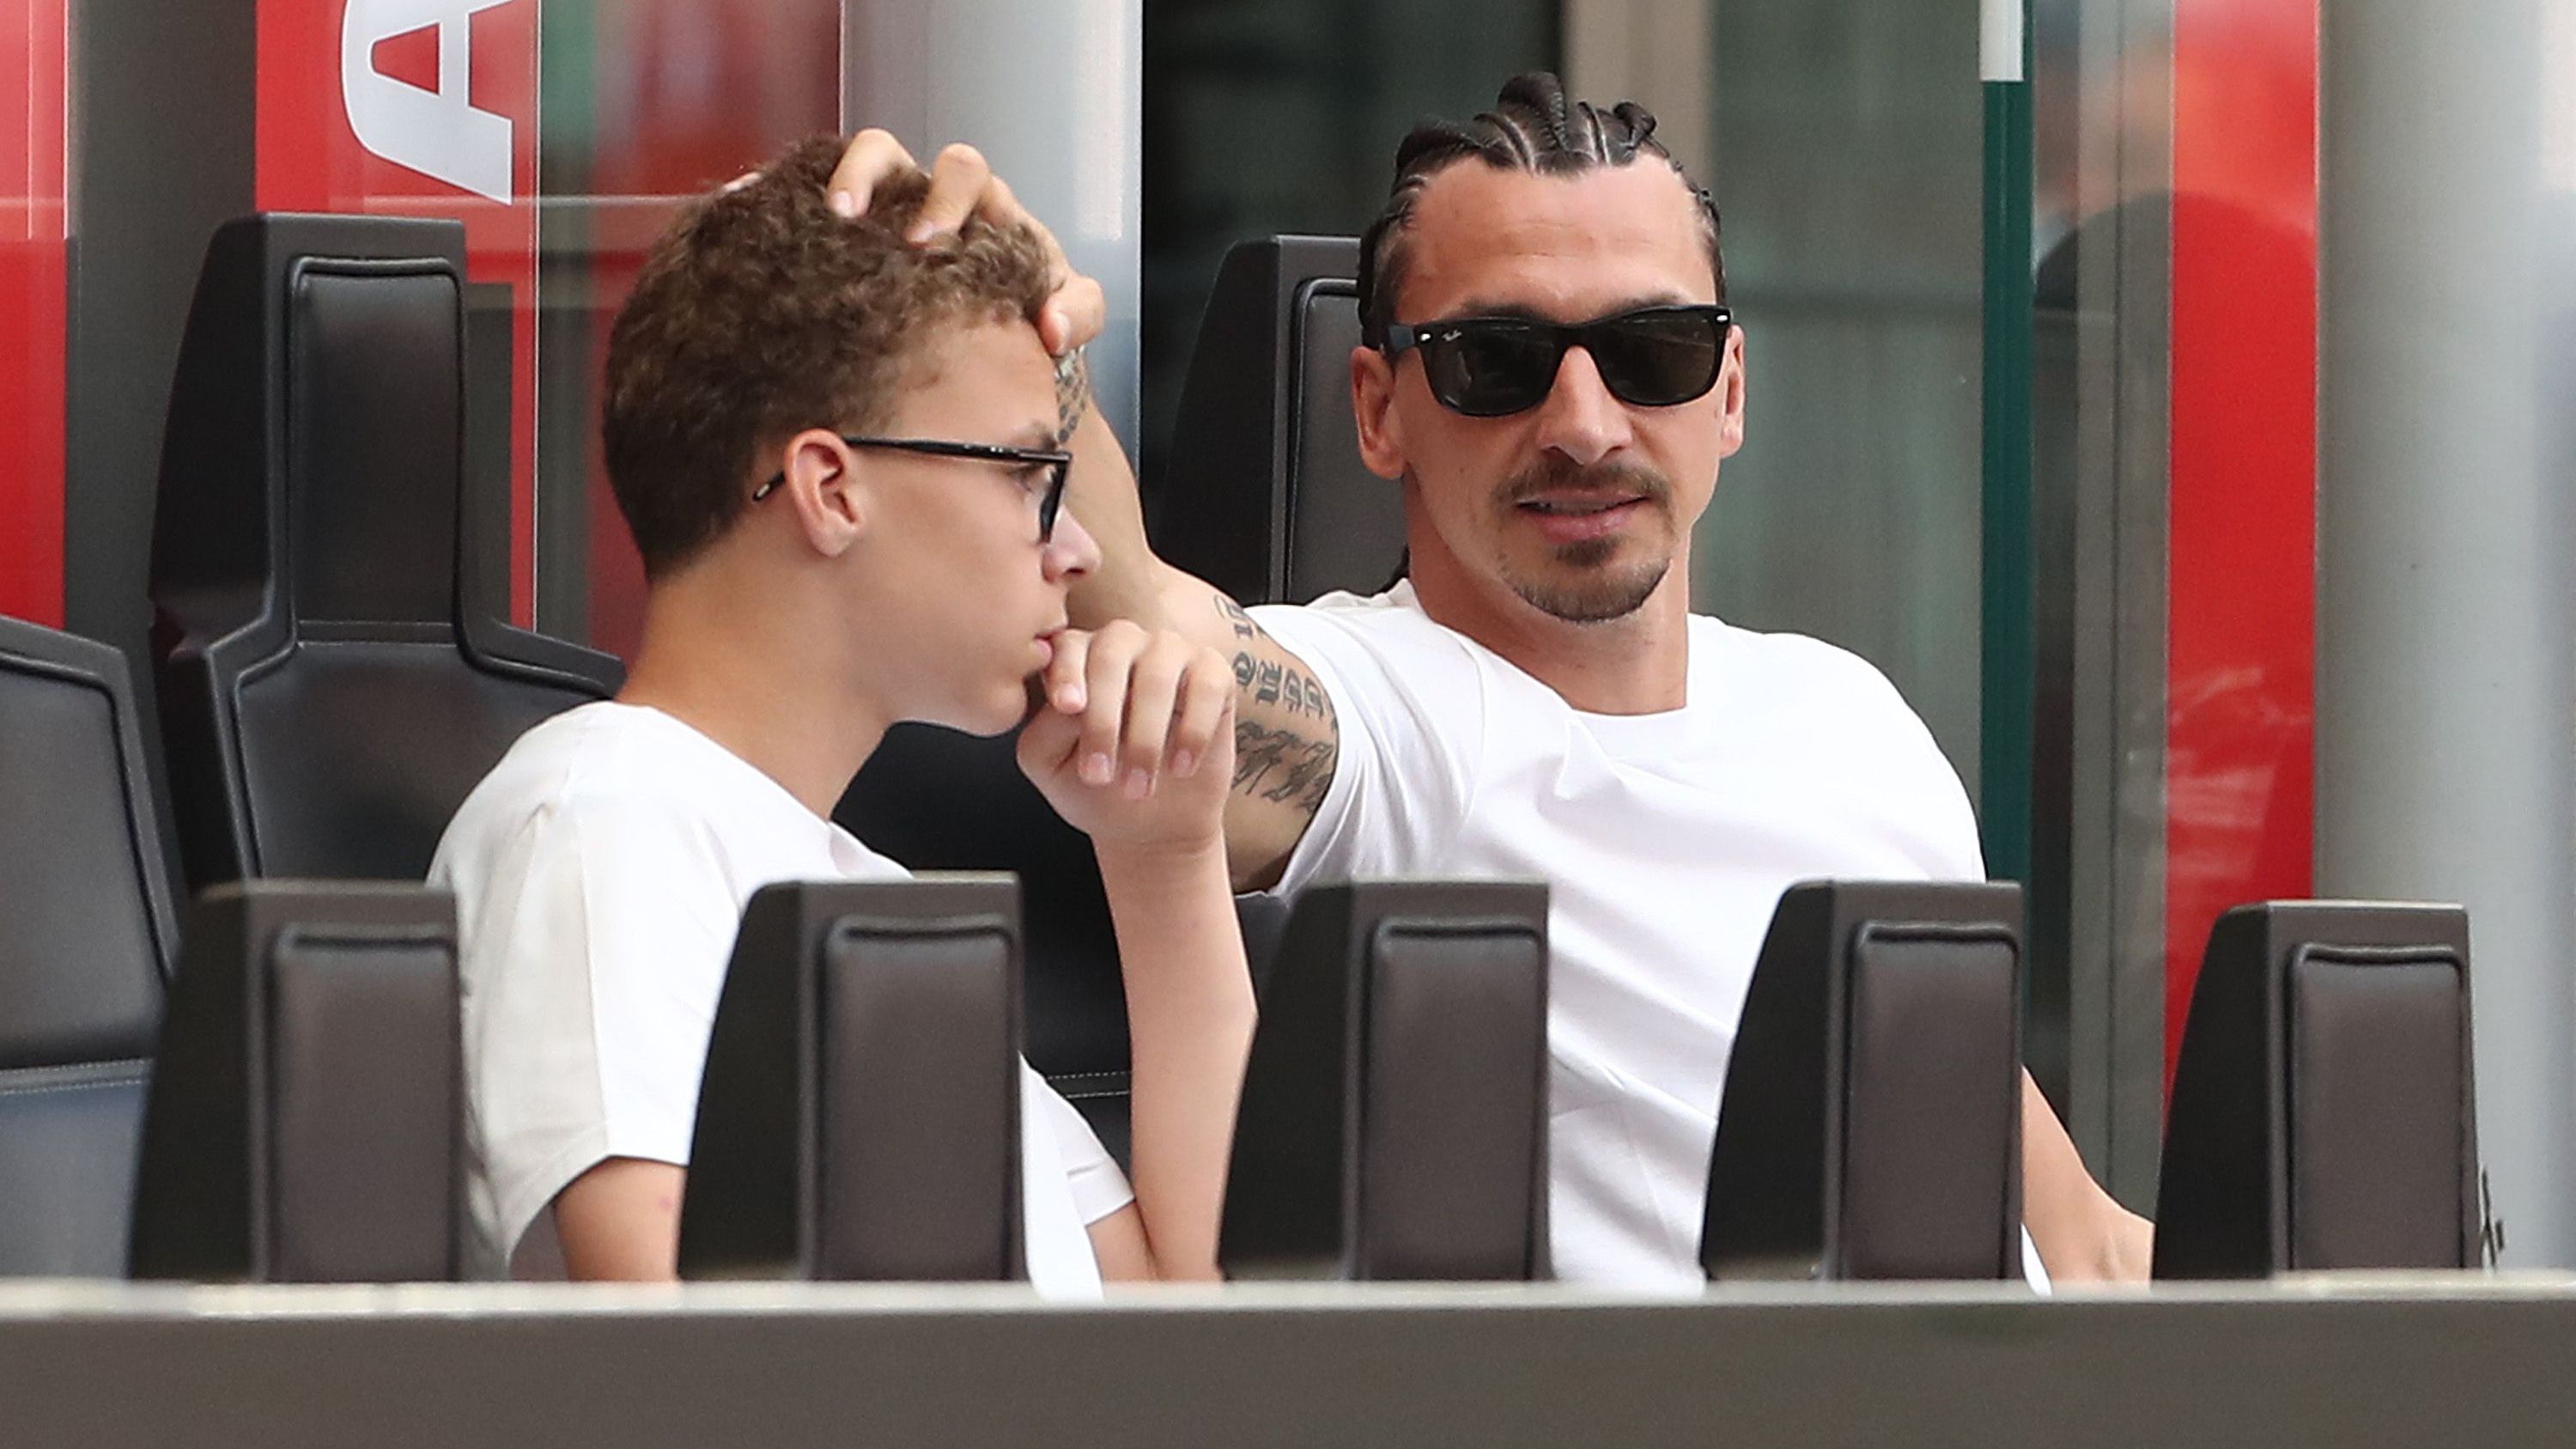 Vincent Ibrahimovic és édesapja, Zlatan